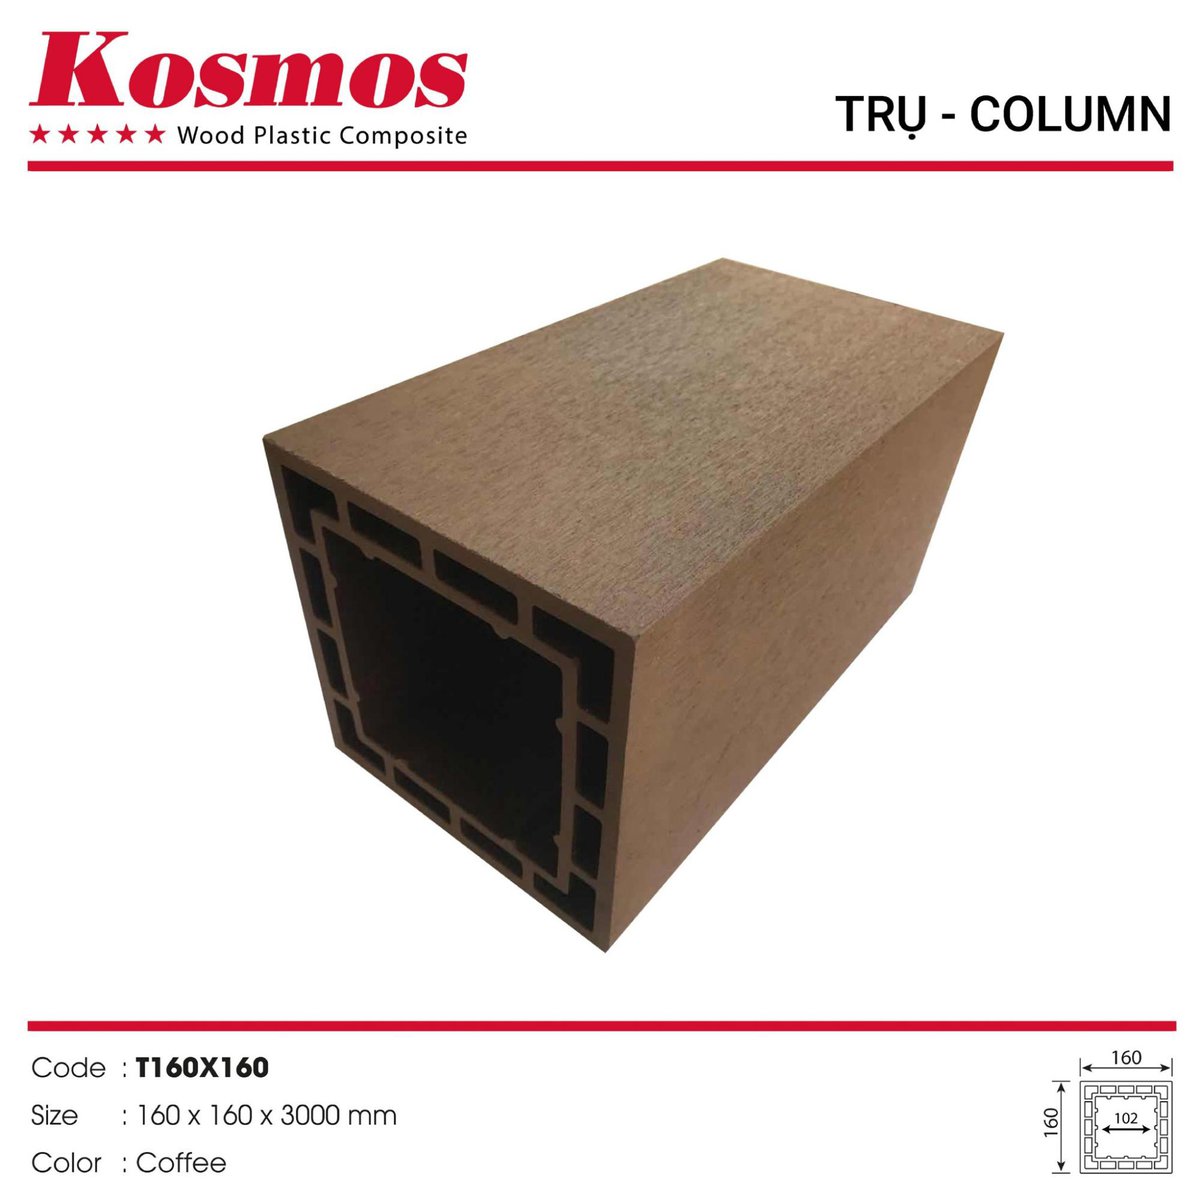 Pergola Kosmos T160X160 plastic wood pillar in Coffee color